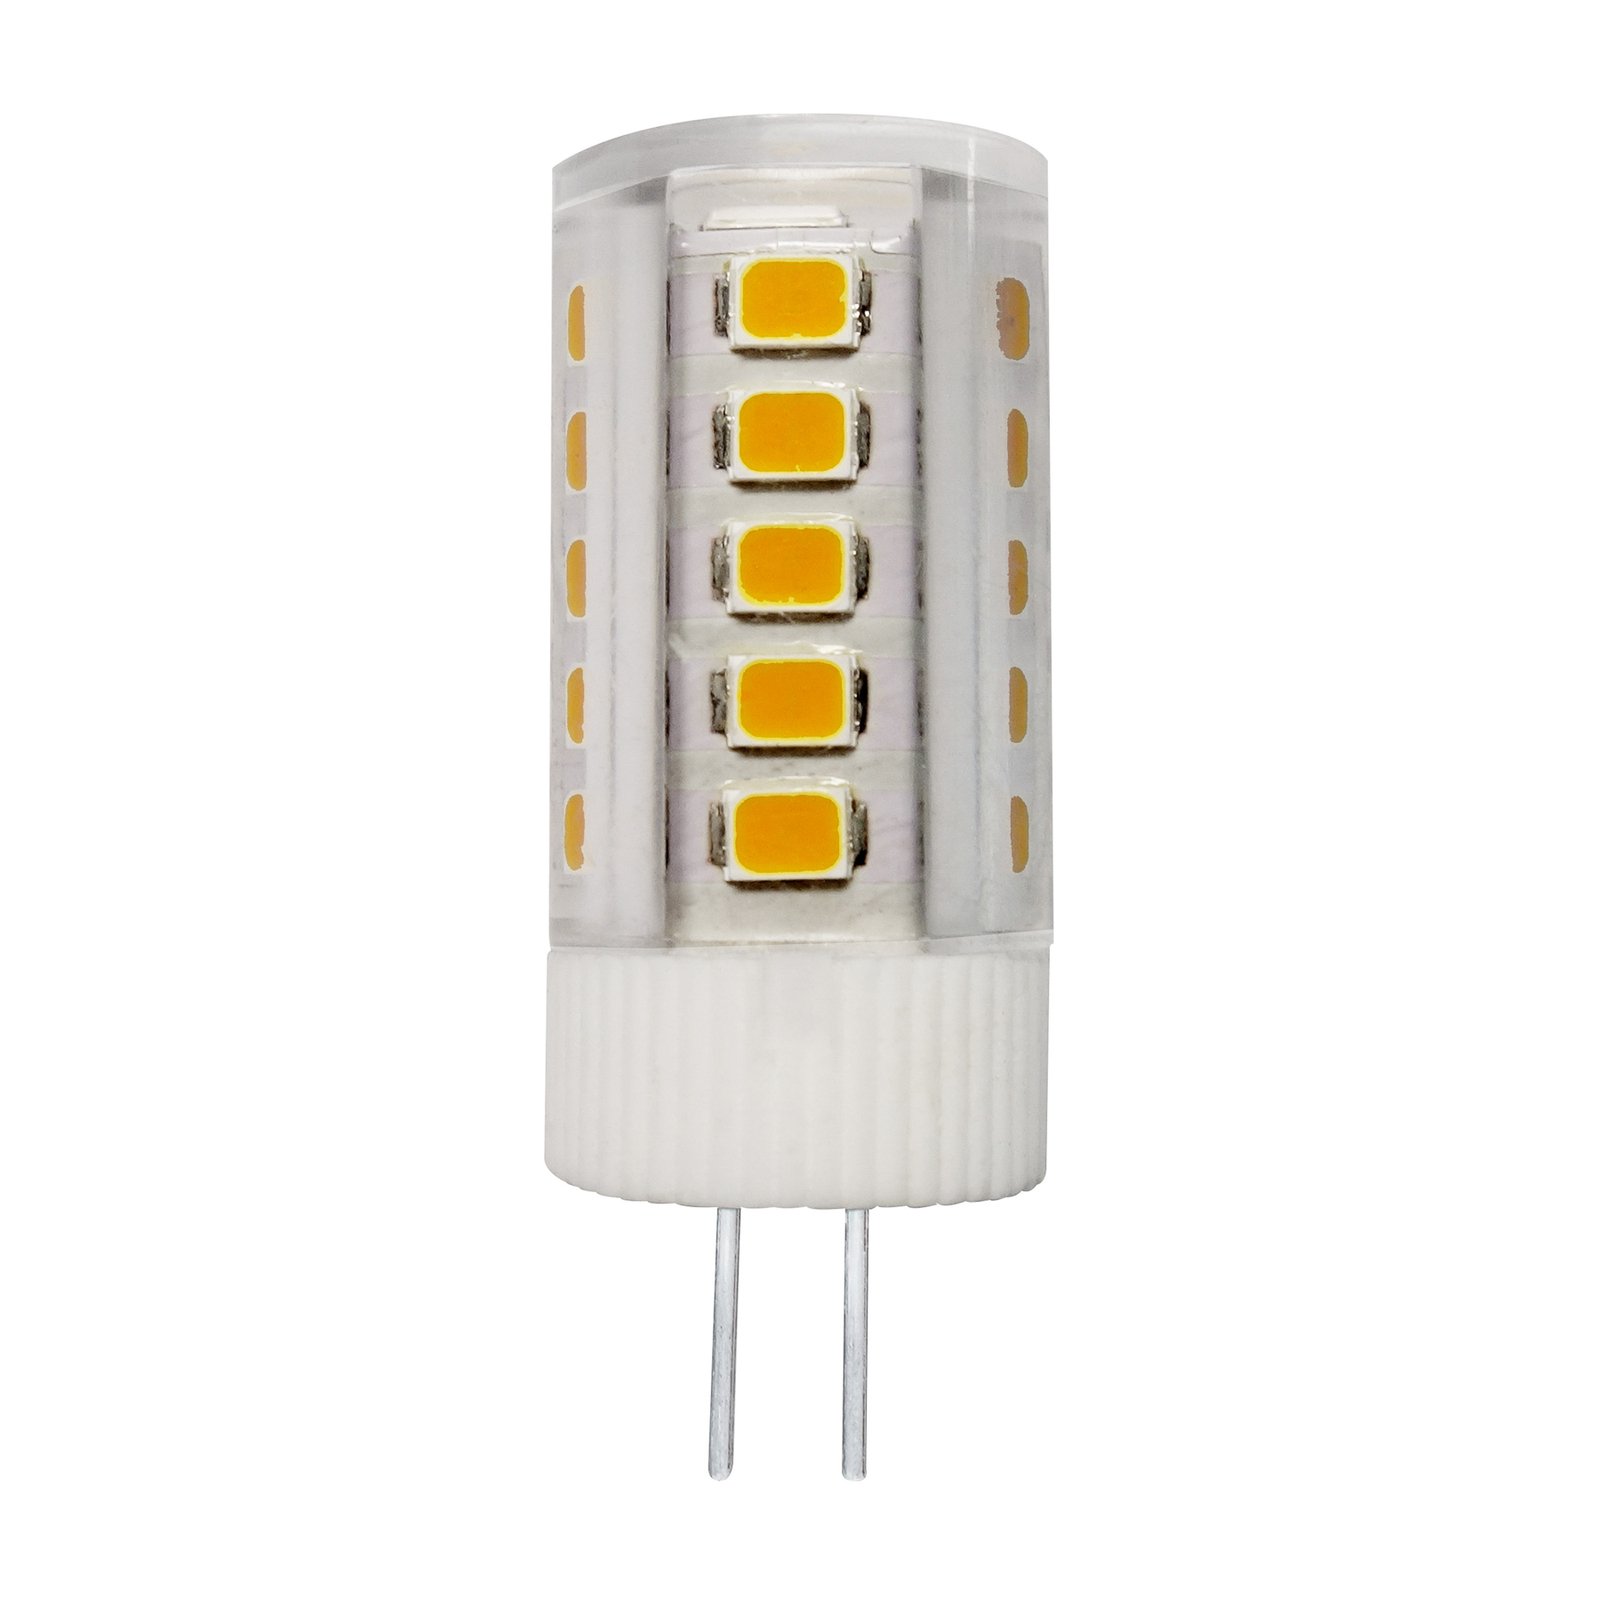 Müller Licht LED-stiftlampa G4 3W 827 klar 3 st